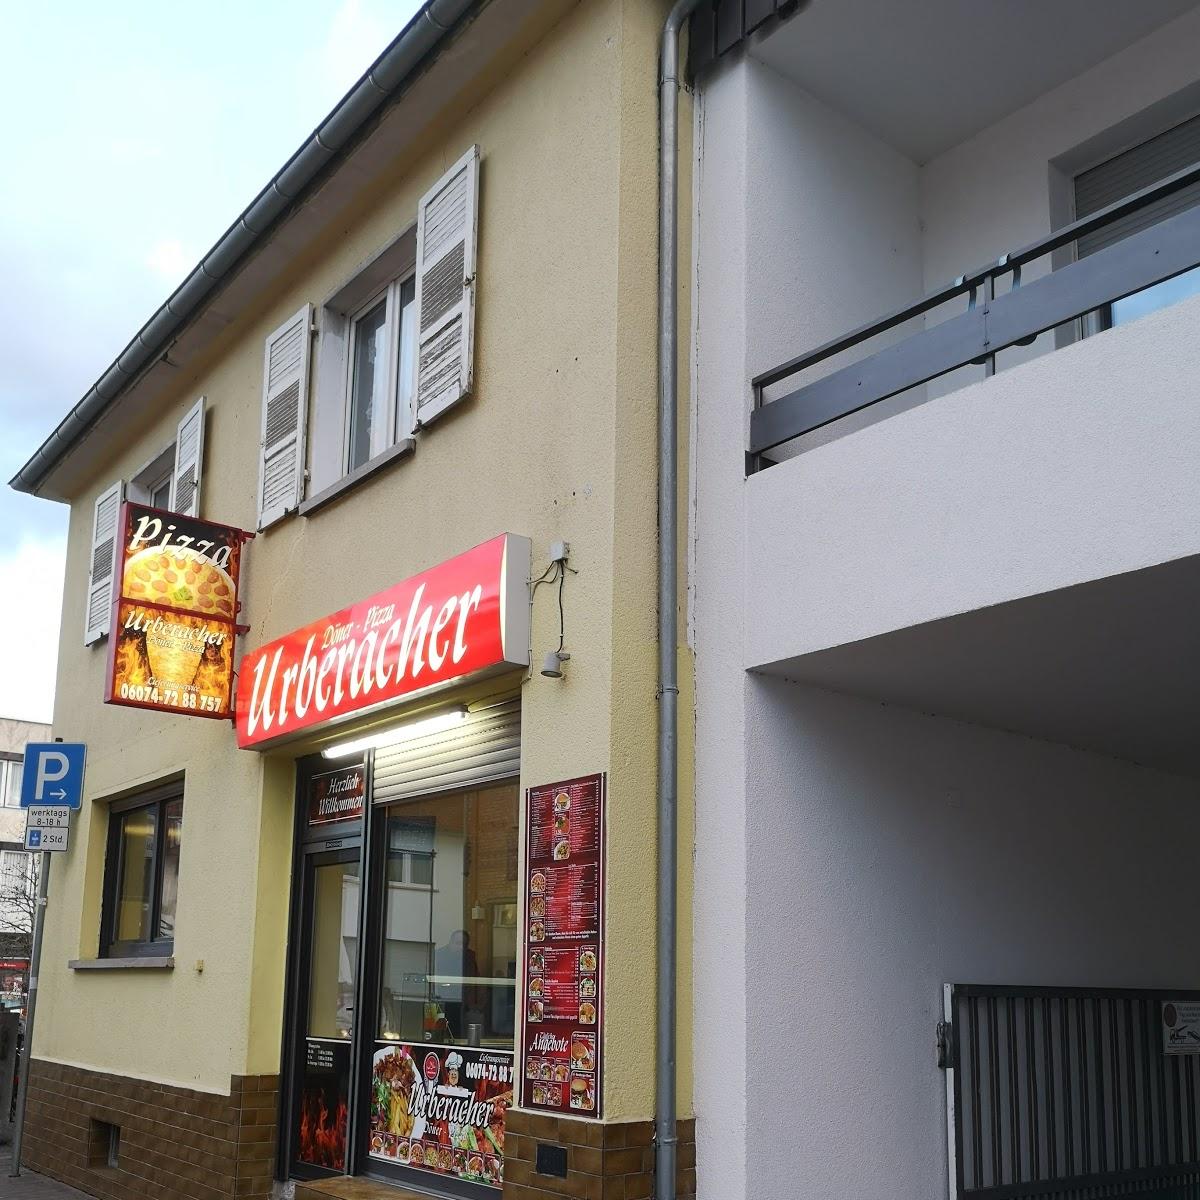 Restaurant "Orwischer Kebab" in Rödermark